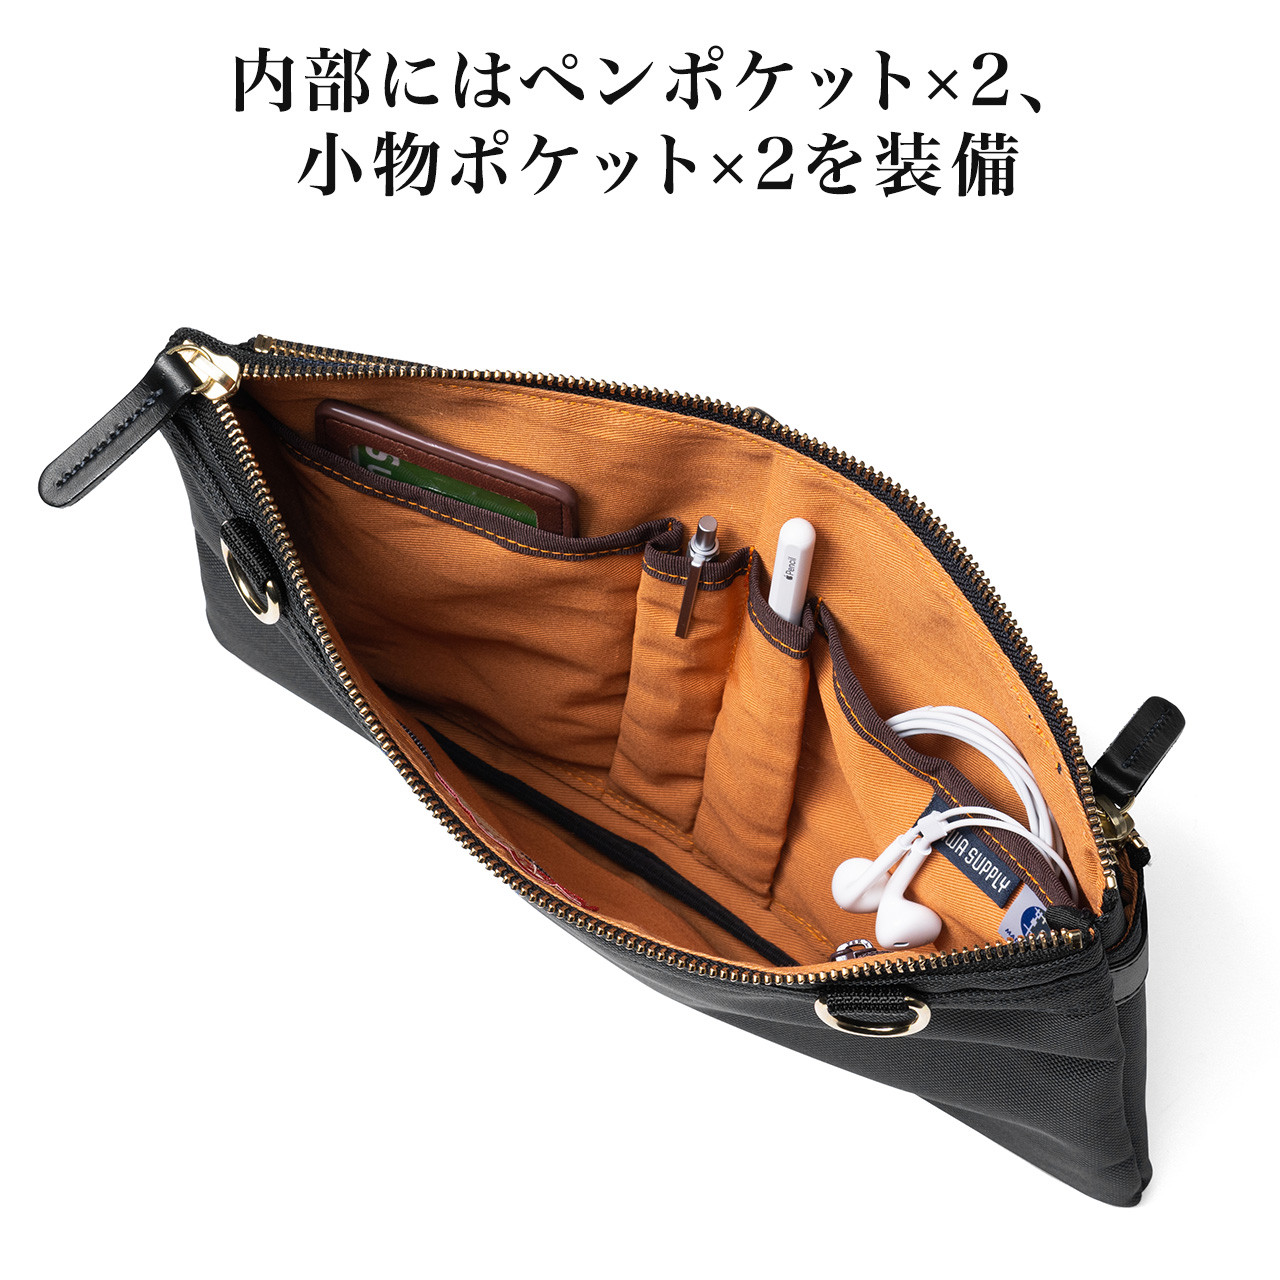 ミニショルダーバッグ サコッシュ 日本製 高強 鎧布 ナイロン 撥水 200 